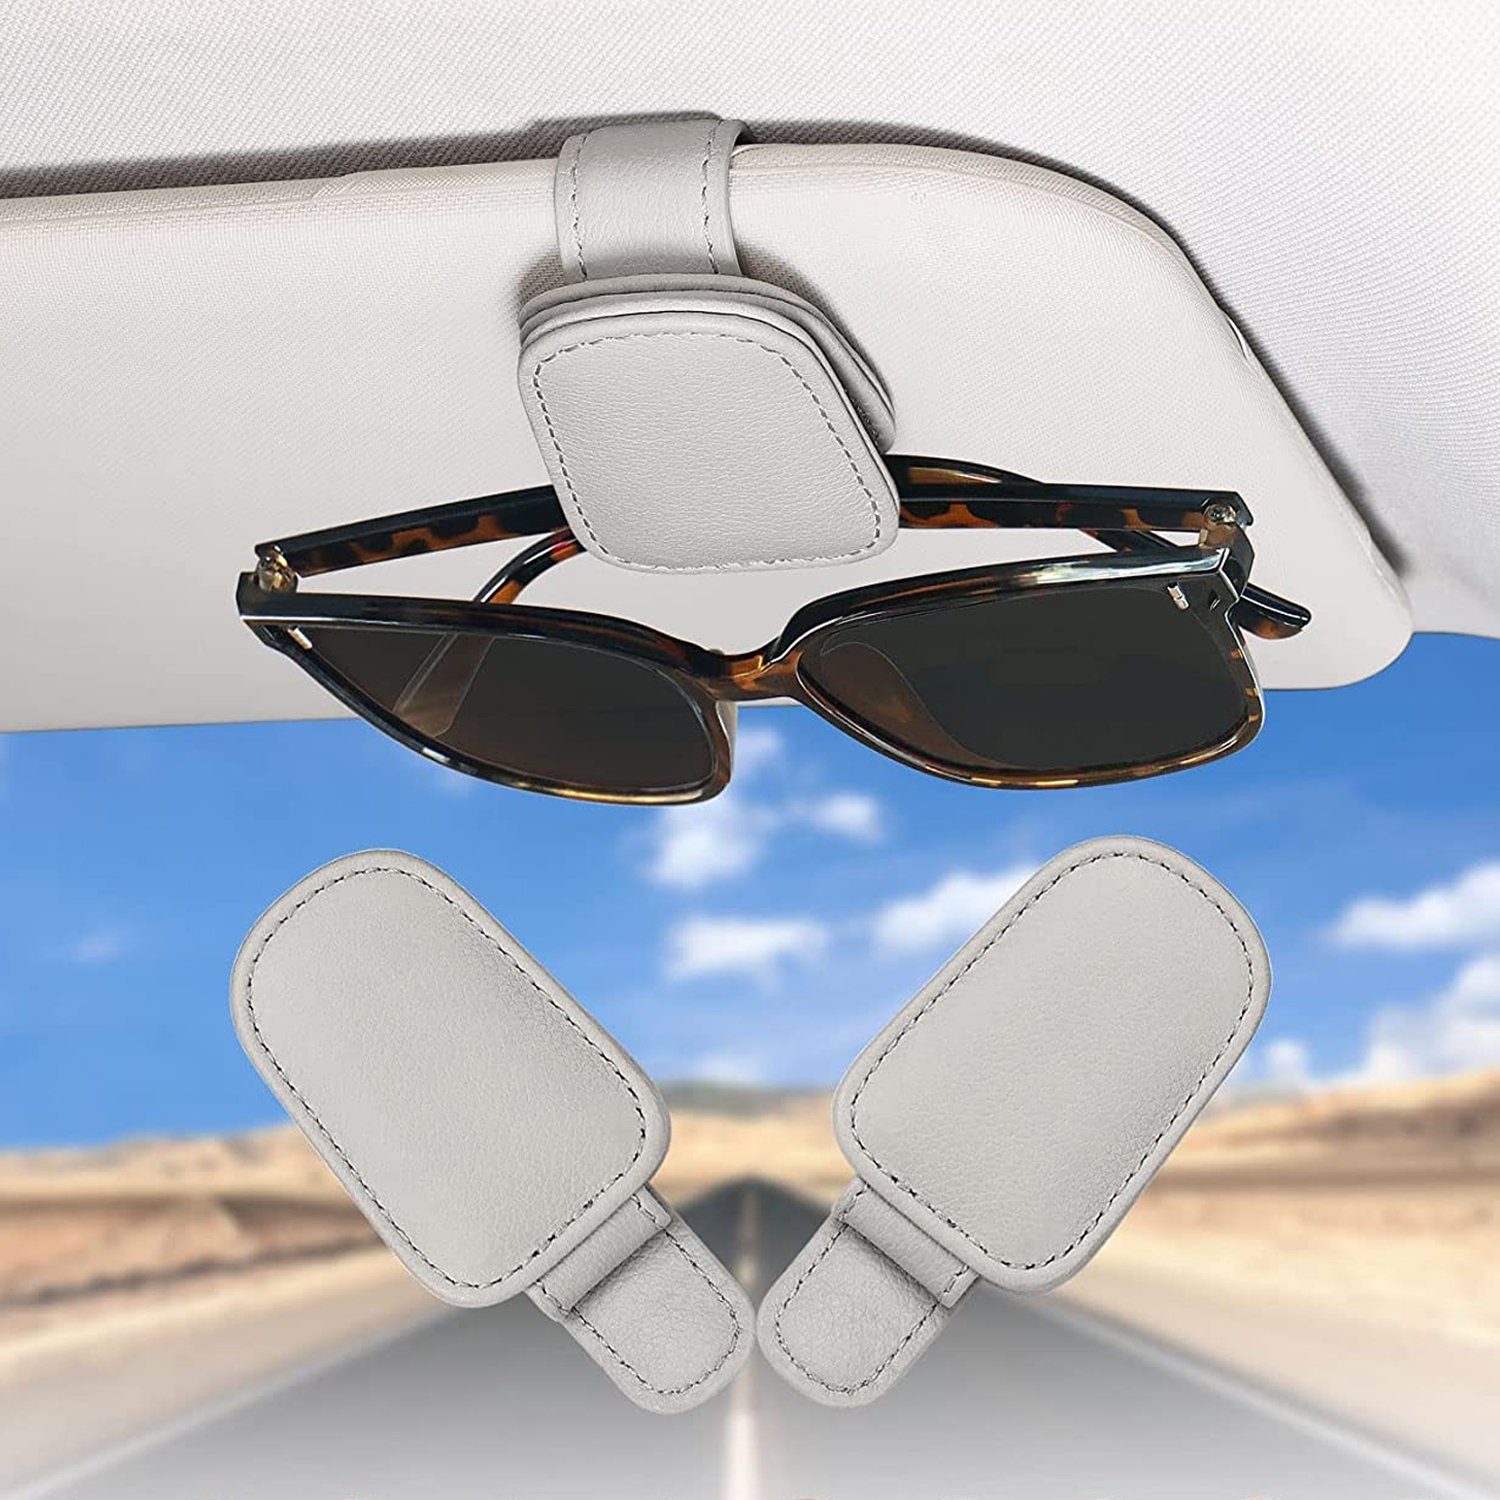 NUODWELL Autosonnenschutz 2 Grau Visier Sonnenblende, Sonnenbrillenhalterung Brillenhalter Auto Pack